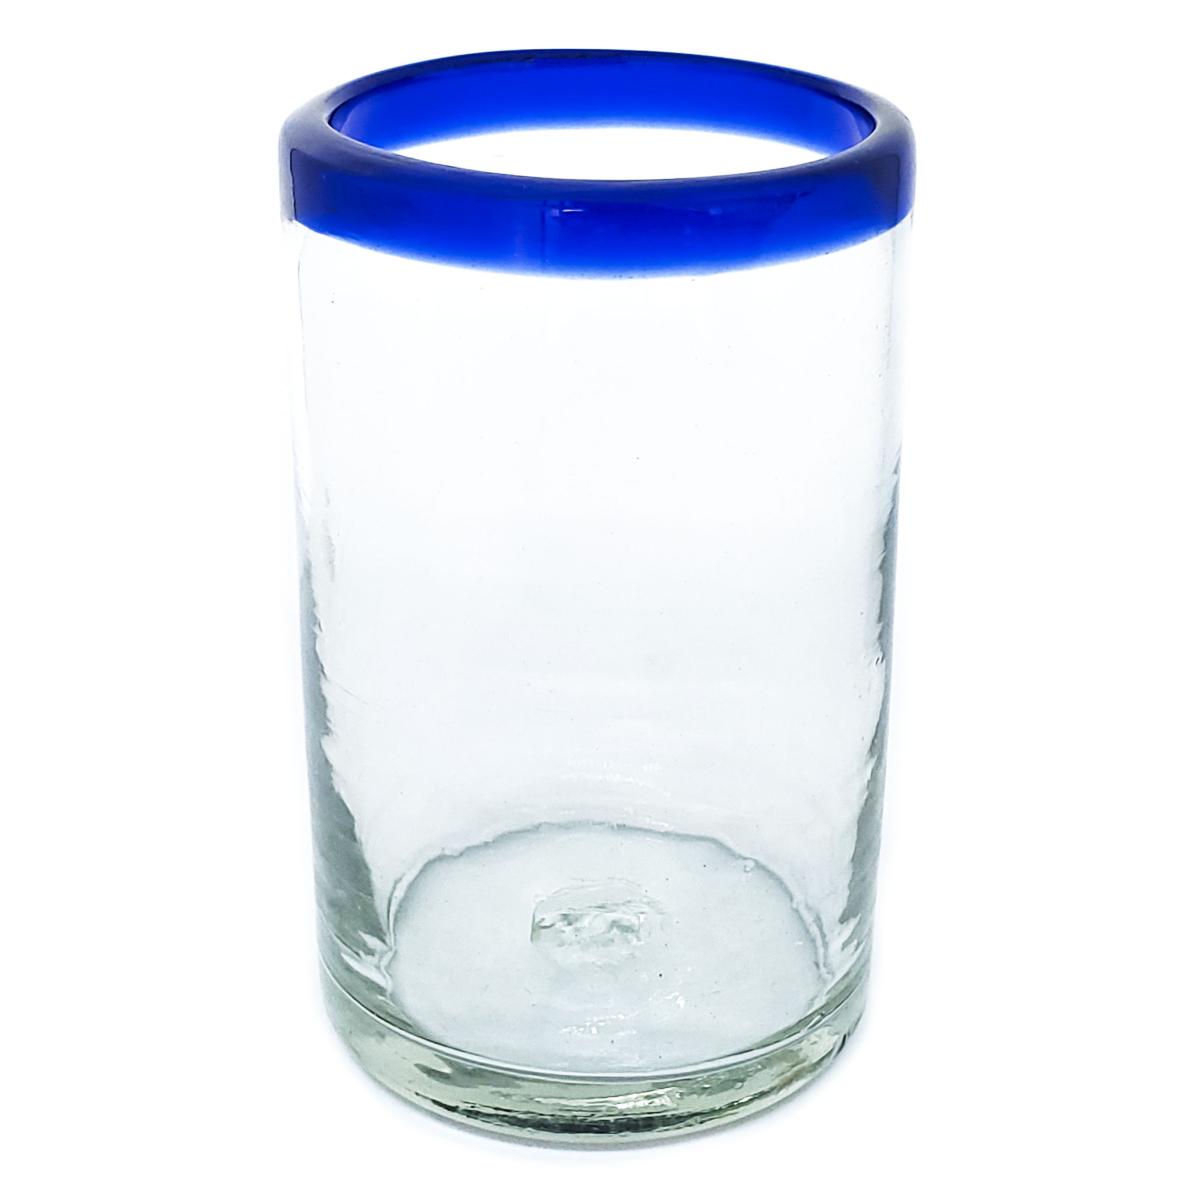 Vasos de Vidrio Soplado al Mayoreo / vasos grandes con borde azul cobalto / stos artesanales vasos le darn un toque clsico a su bebida favorita.